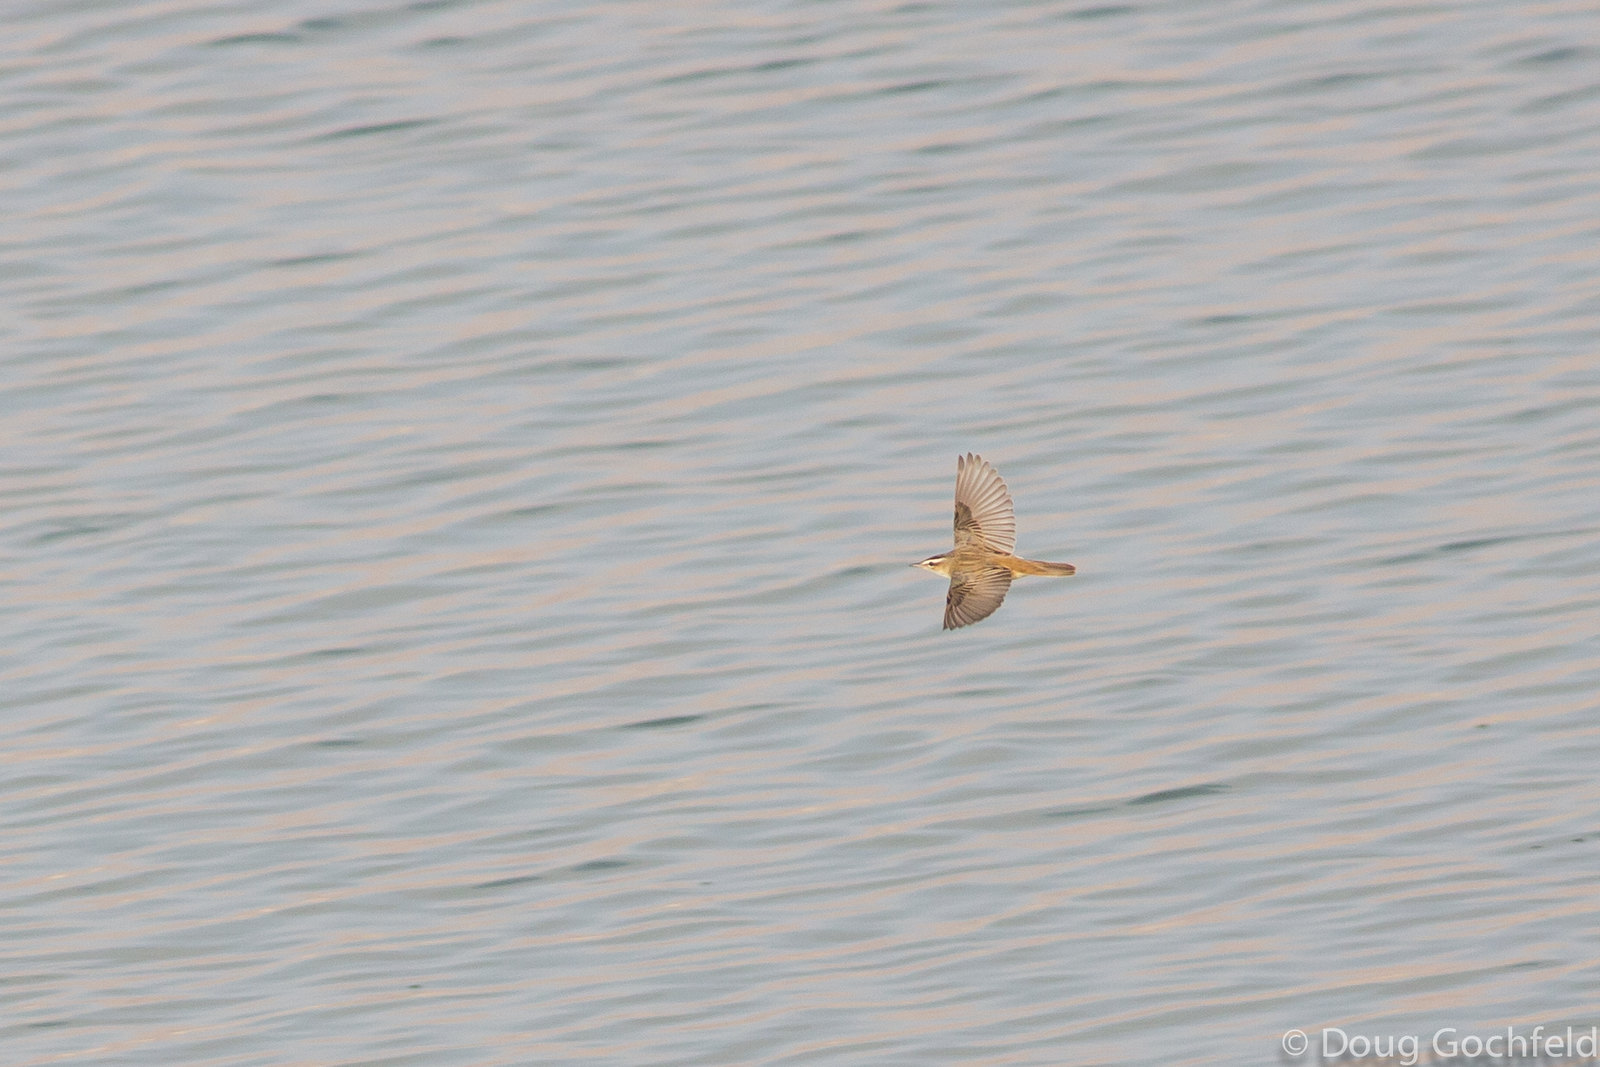 Sedge Warbler in flight